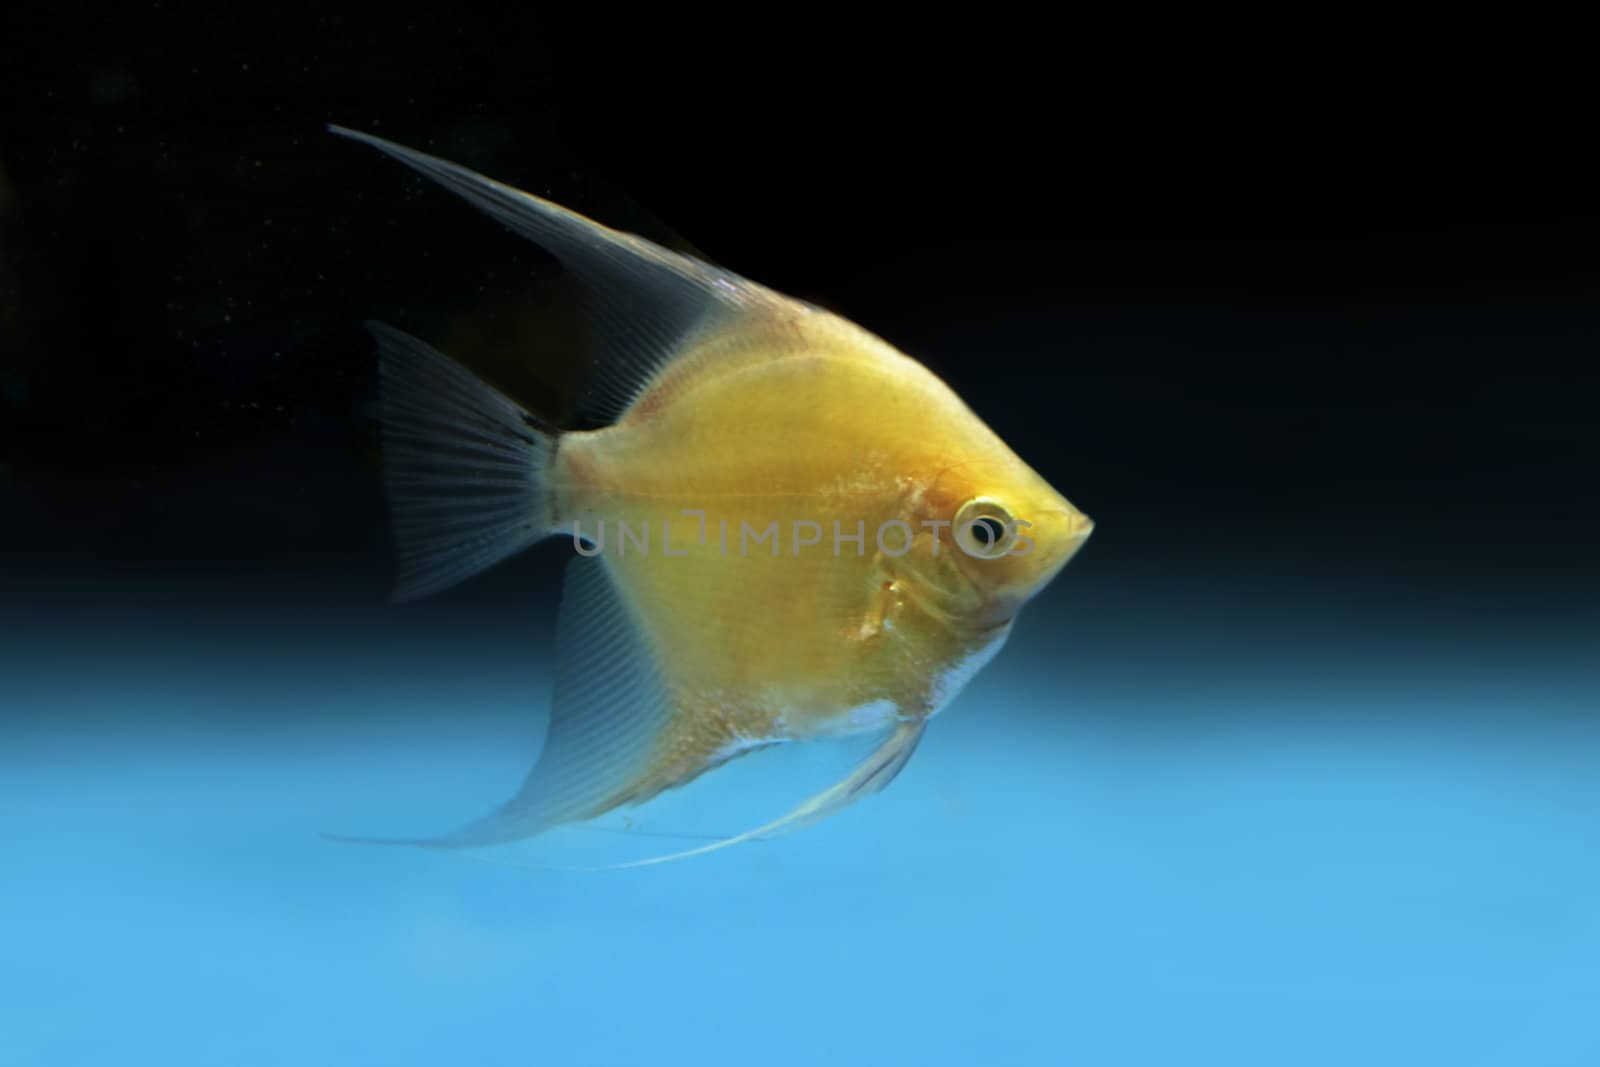 Yelow Goldfish on blue-black background